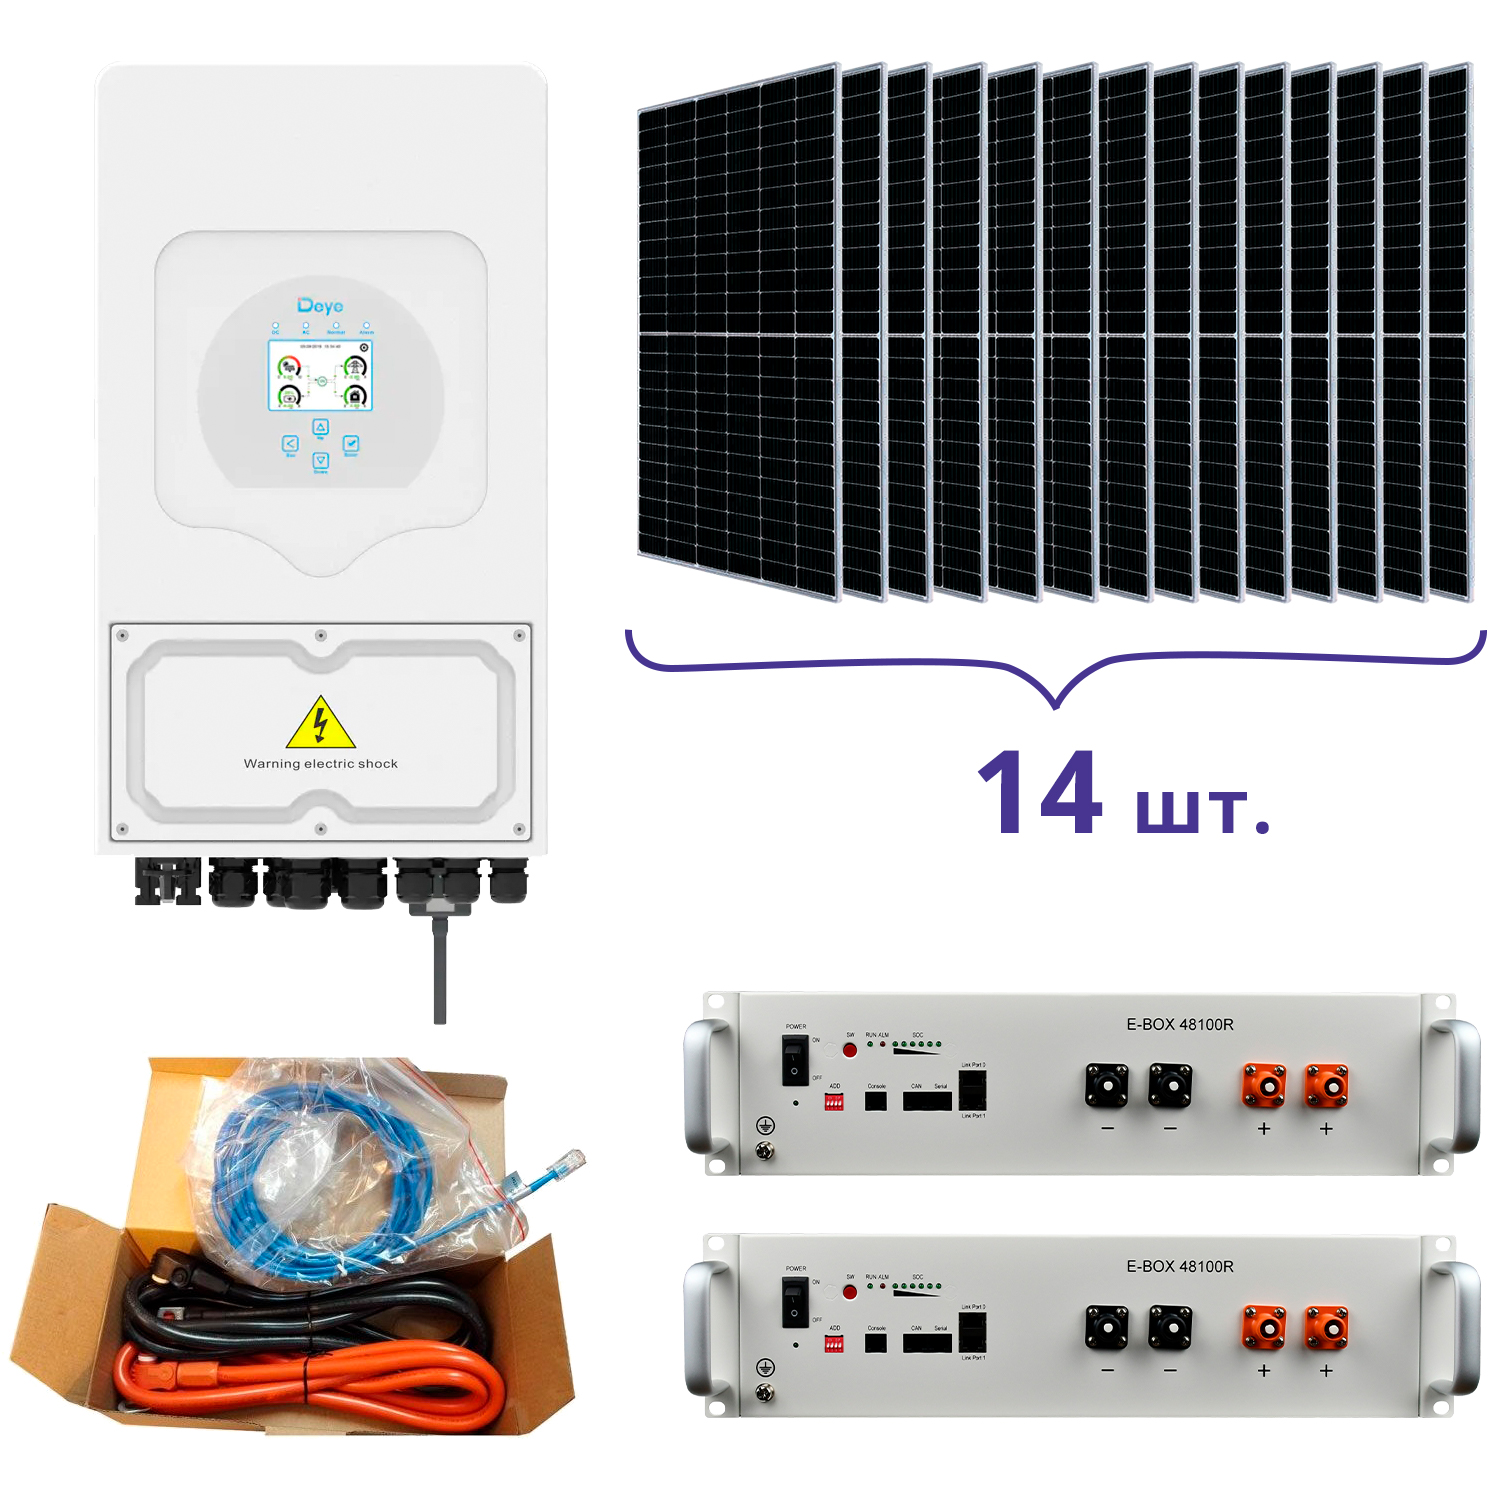 Система резервного питания Deye SUN-5K-SG03LP1-EU+Pytes E-BOX-48100R-2шт.+Battery Cable Kit-1шт.+JA Solar JAM72S20-460/MR 460 Wp, Mono-14шт.+кабель